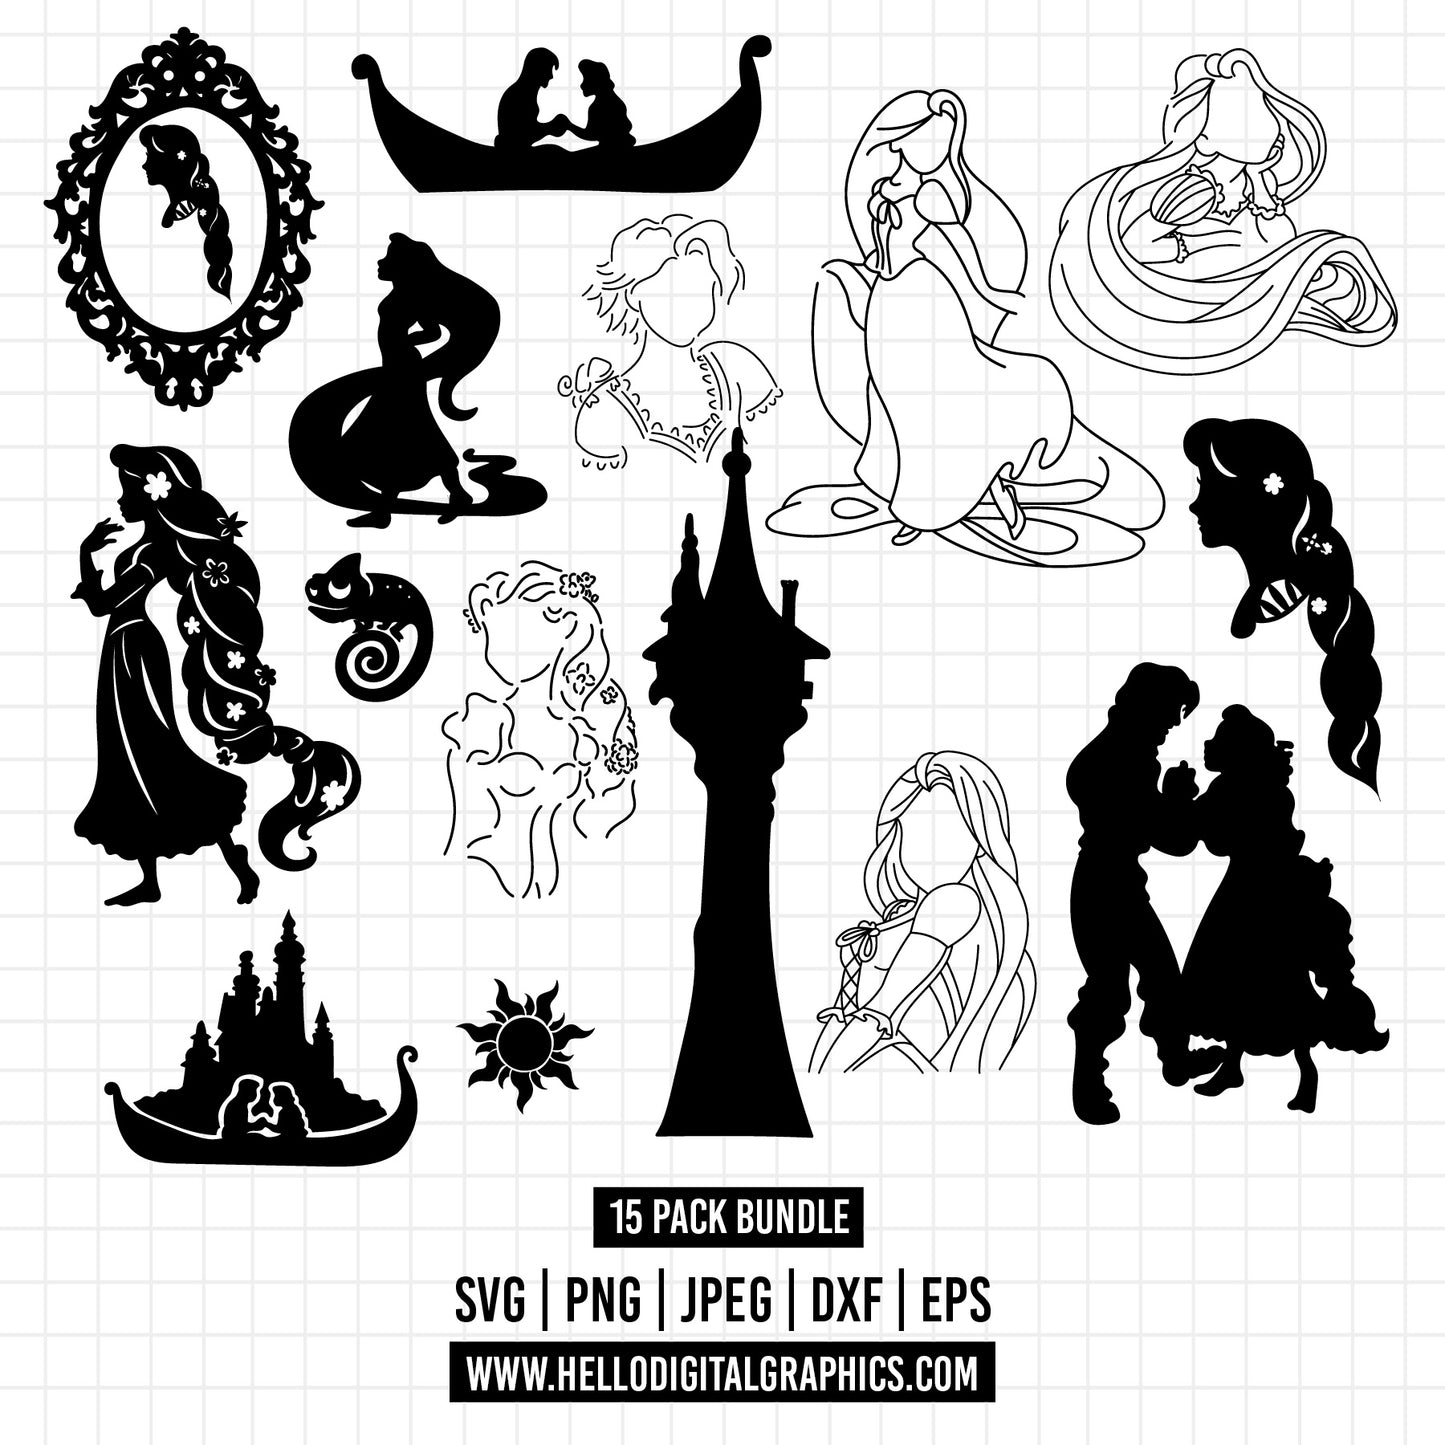 COD1273 - Tangled svg, tangled princess svg, rapunzel svg, Rapunzel svg, disney svg, cutting files for cricut, silhouette